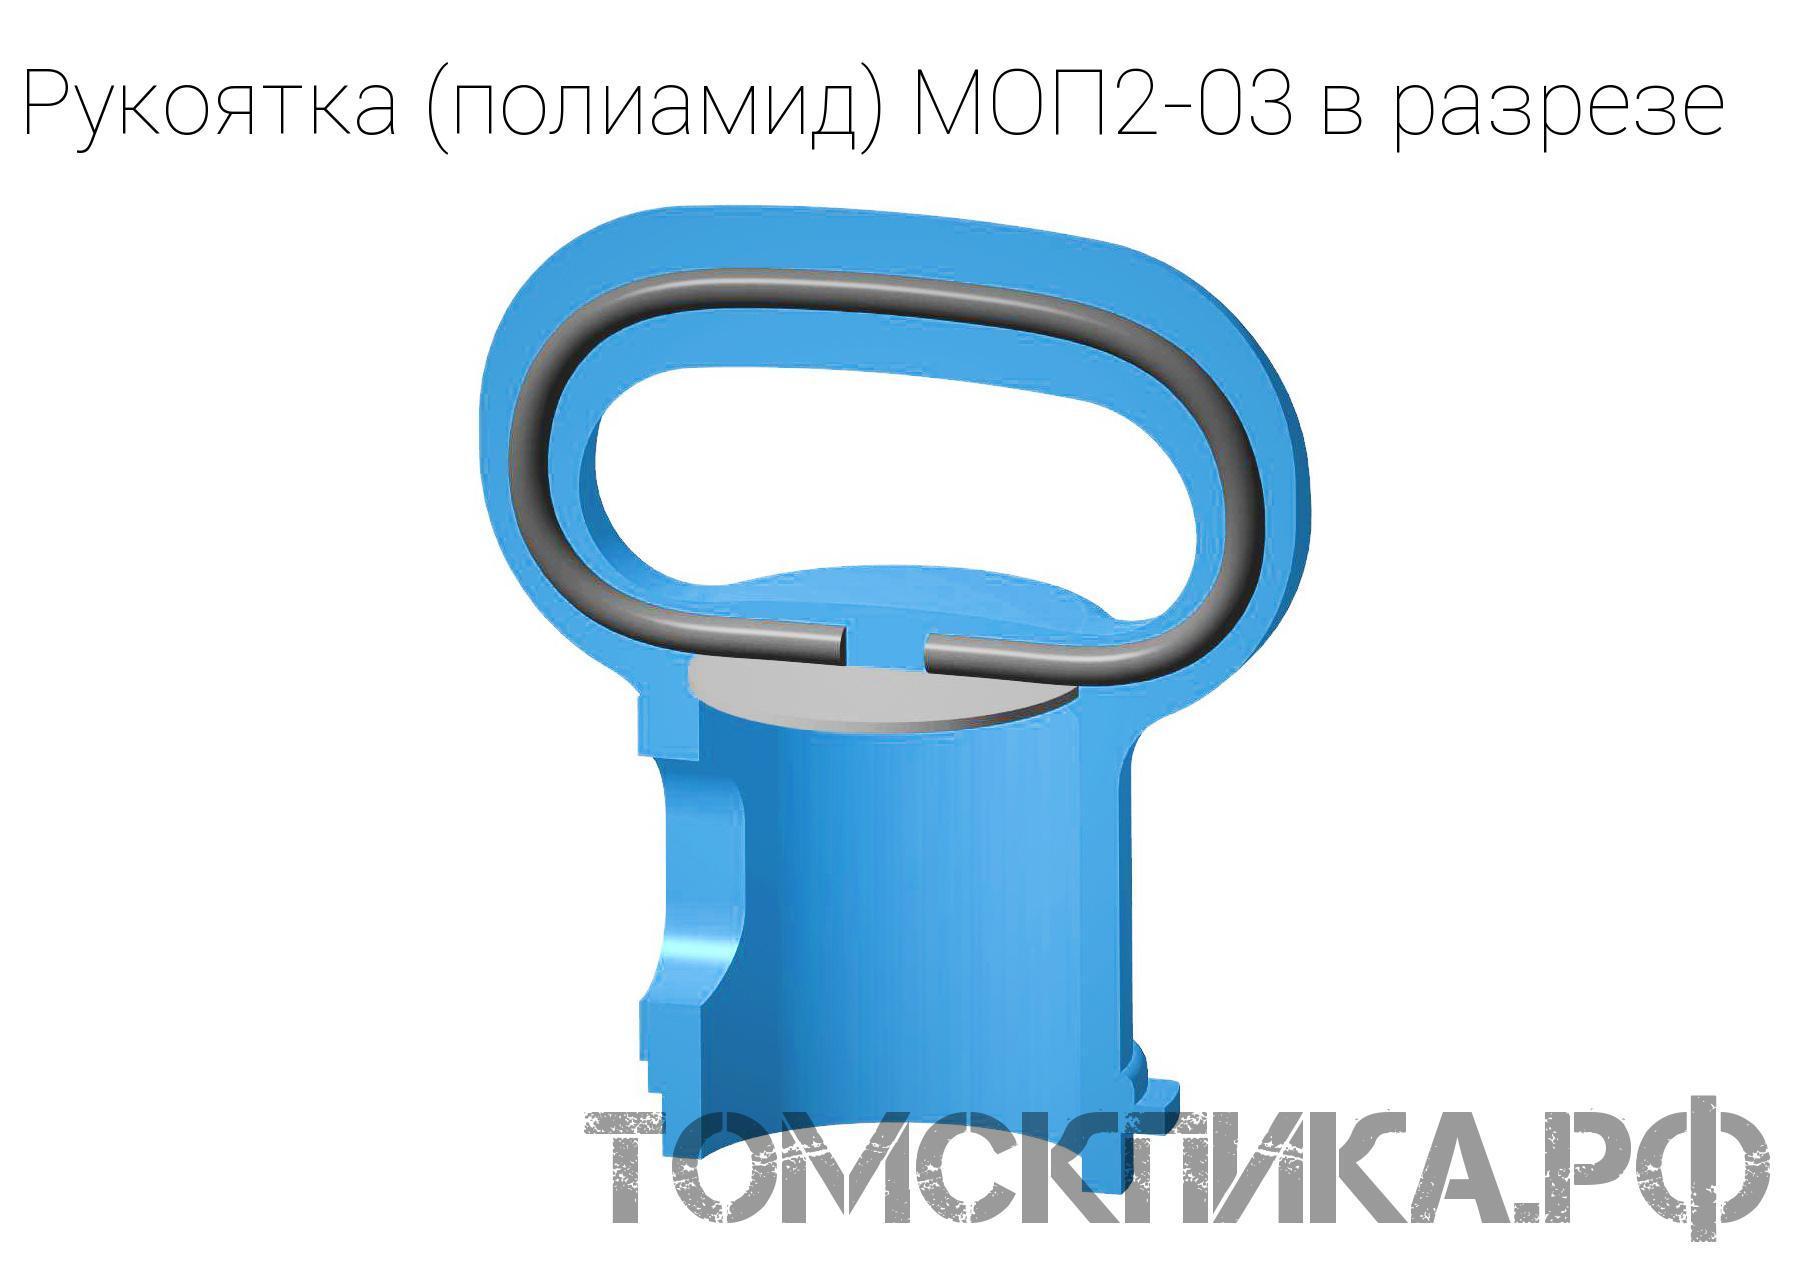 Рукоятка пластмассовая МОП2-03 для отбойного молотка МОП и МО. Купить недорого ООО Томские технологии